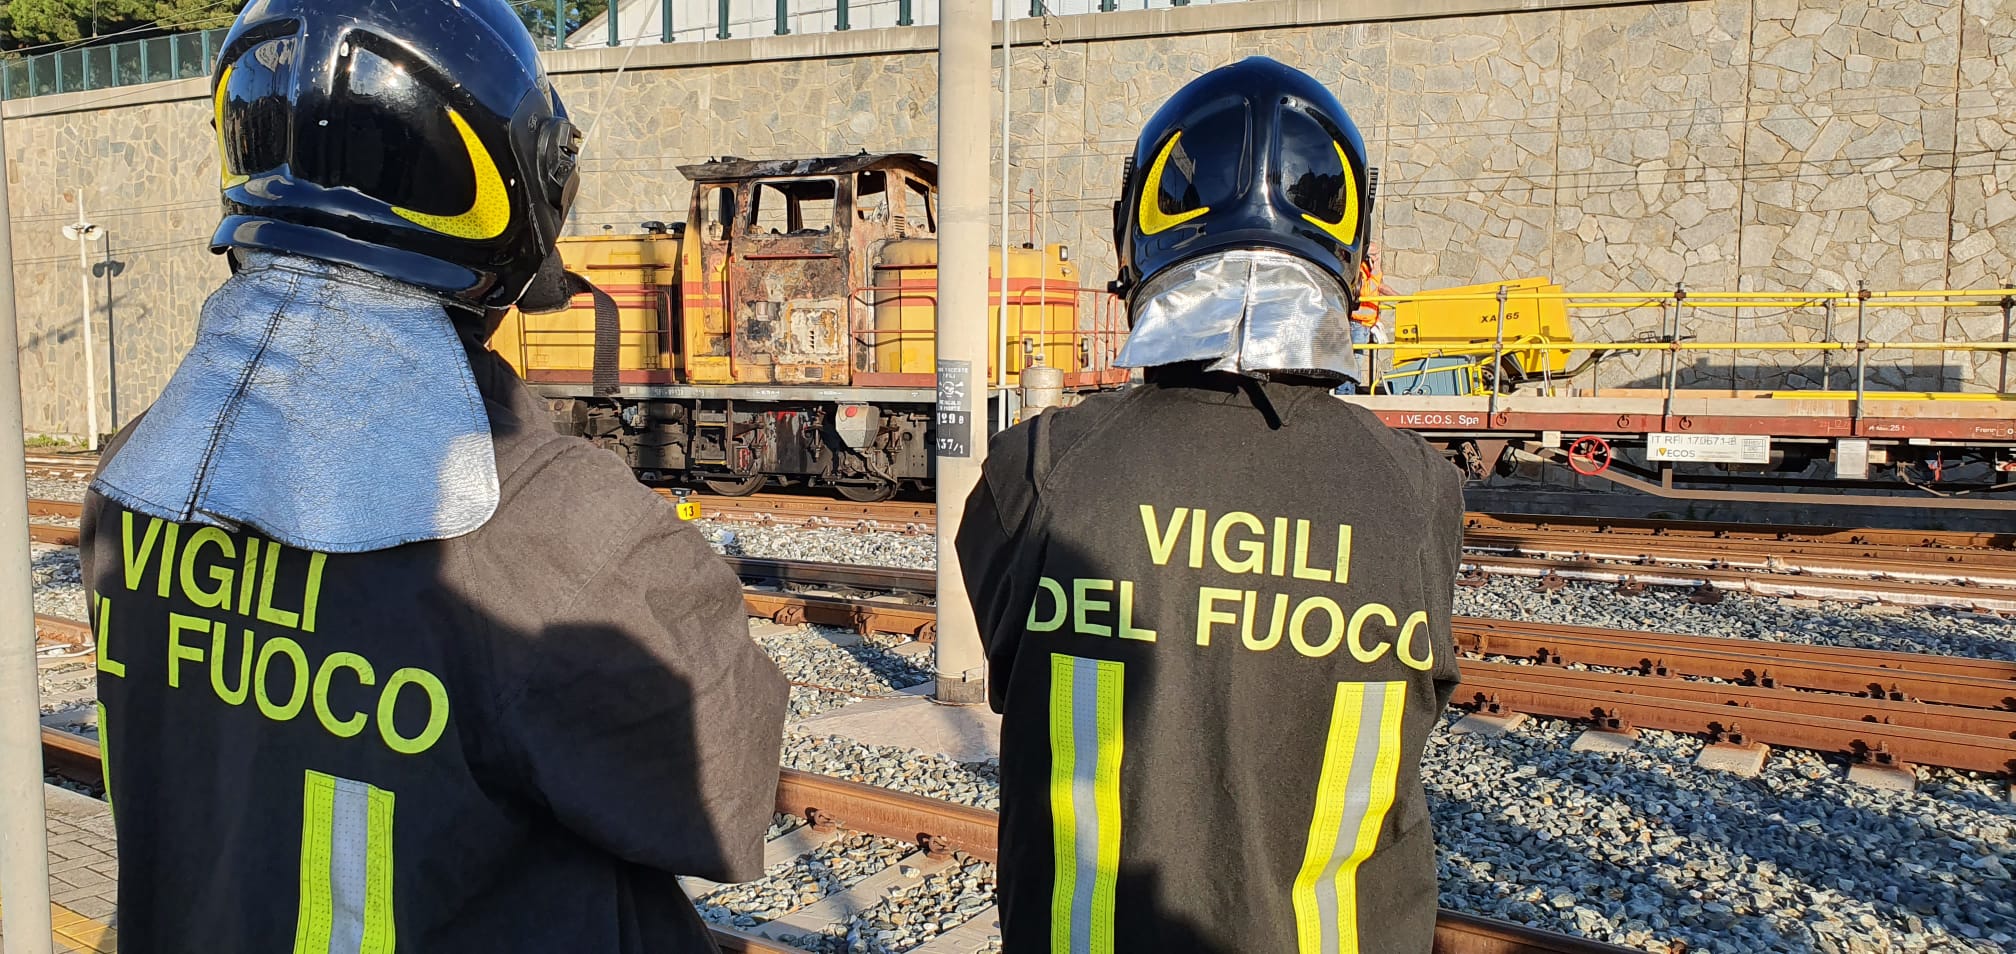 1 incendio locomotore stazione sanremo incidente mortale macchinista_03